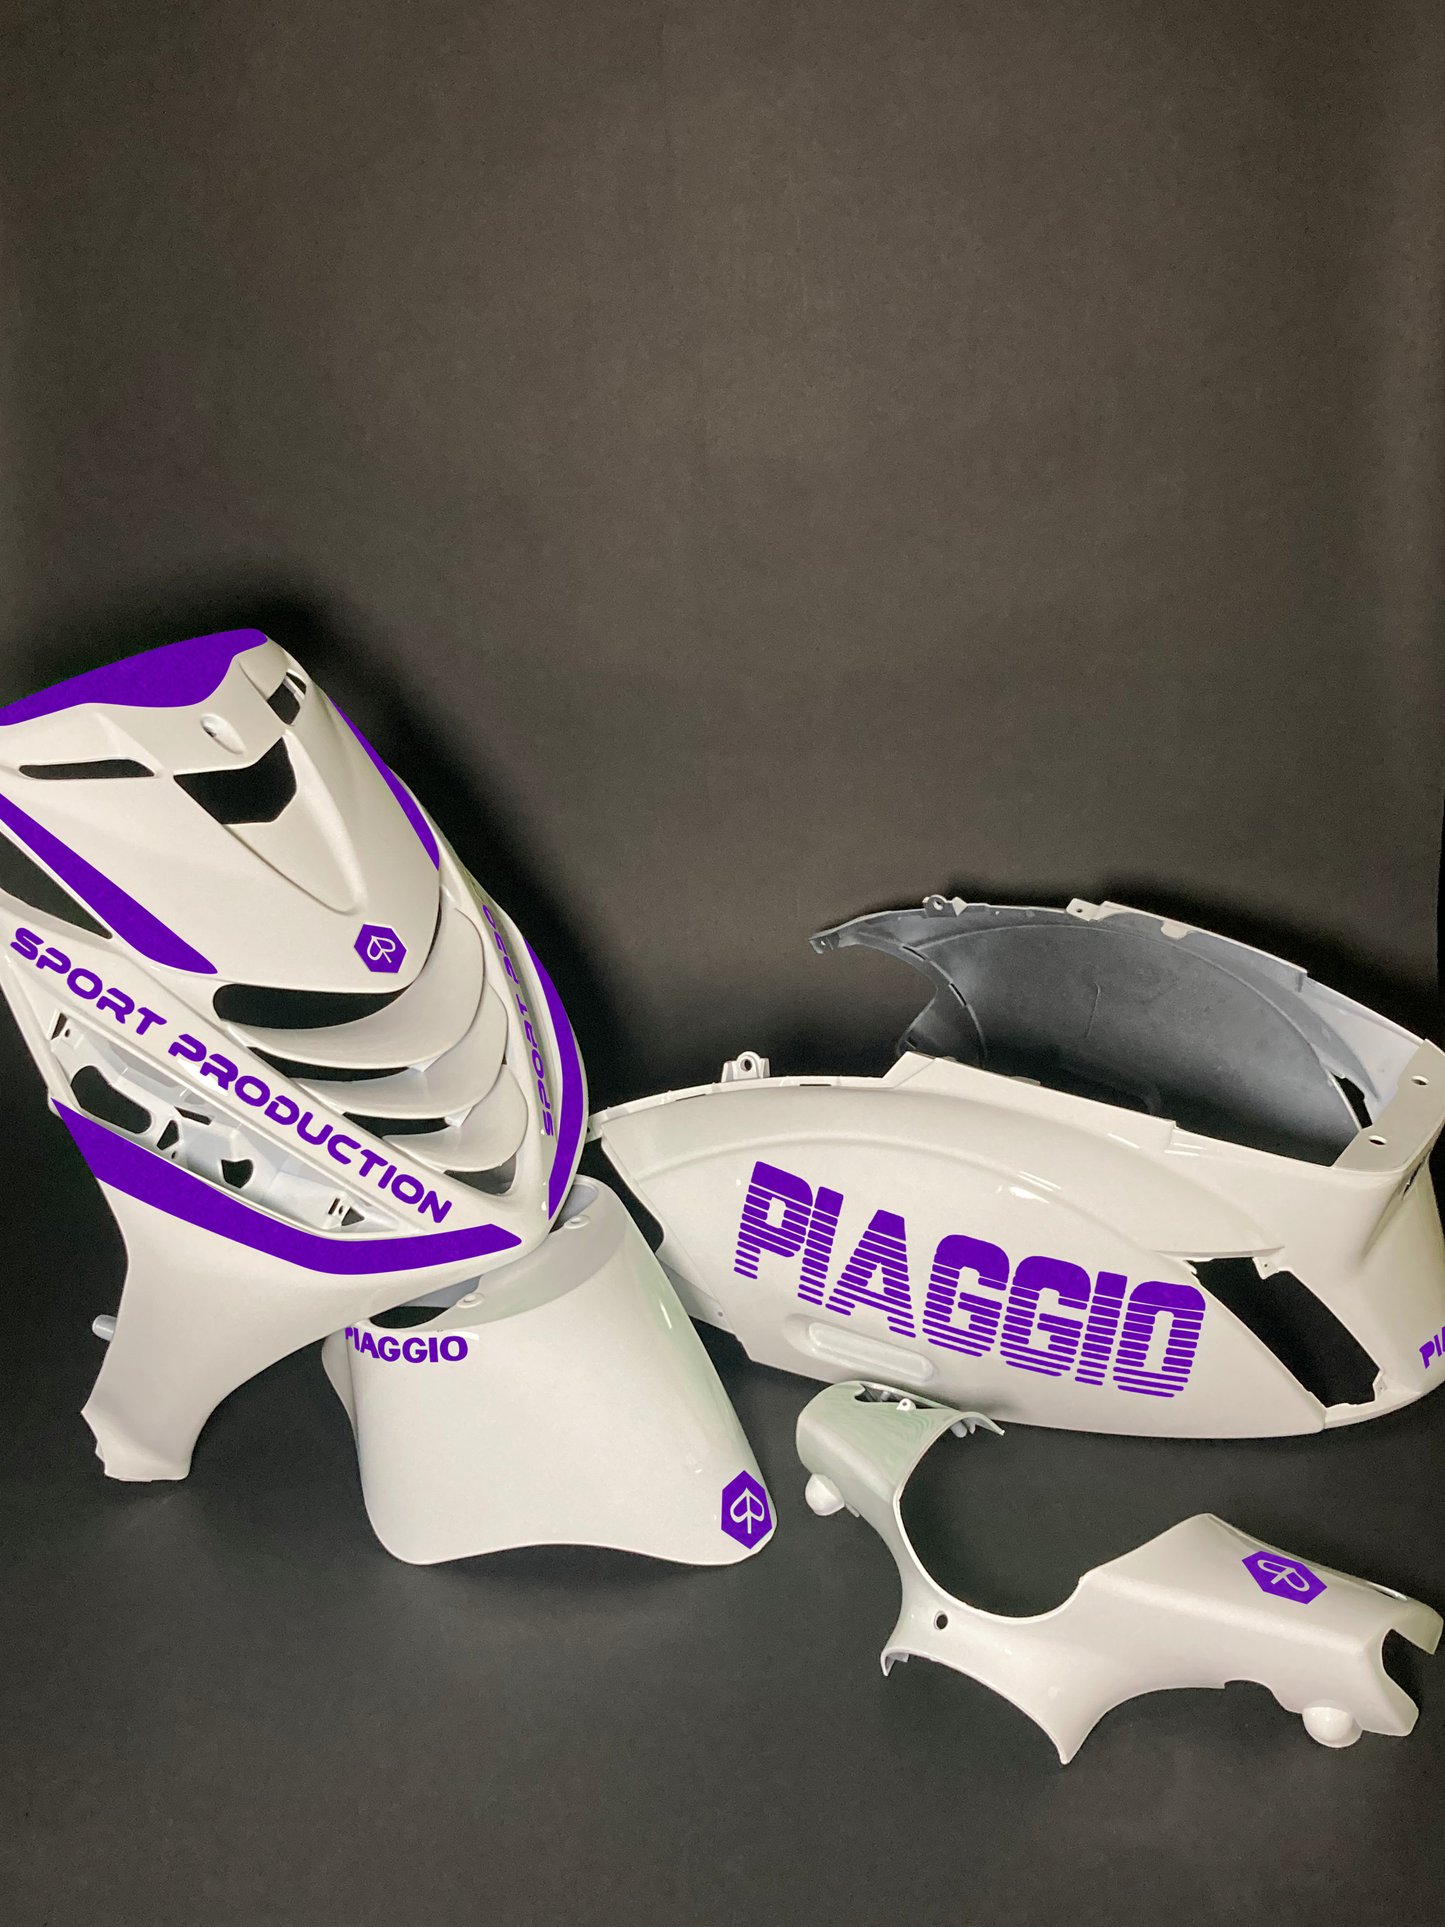 Zip Piaggio | Purple